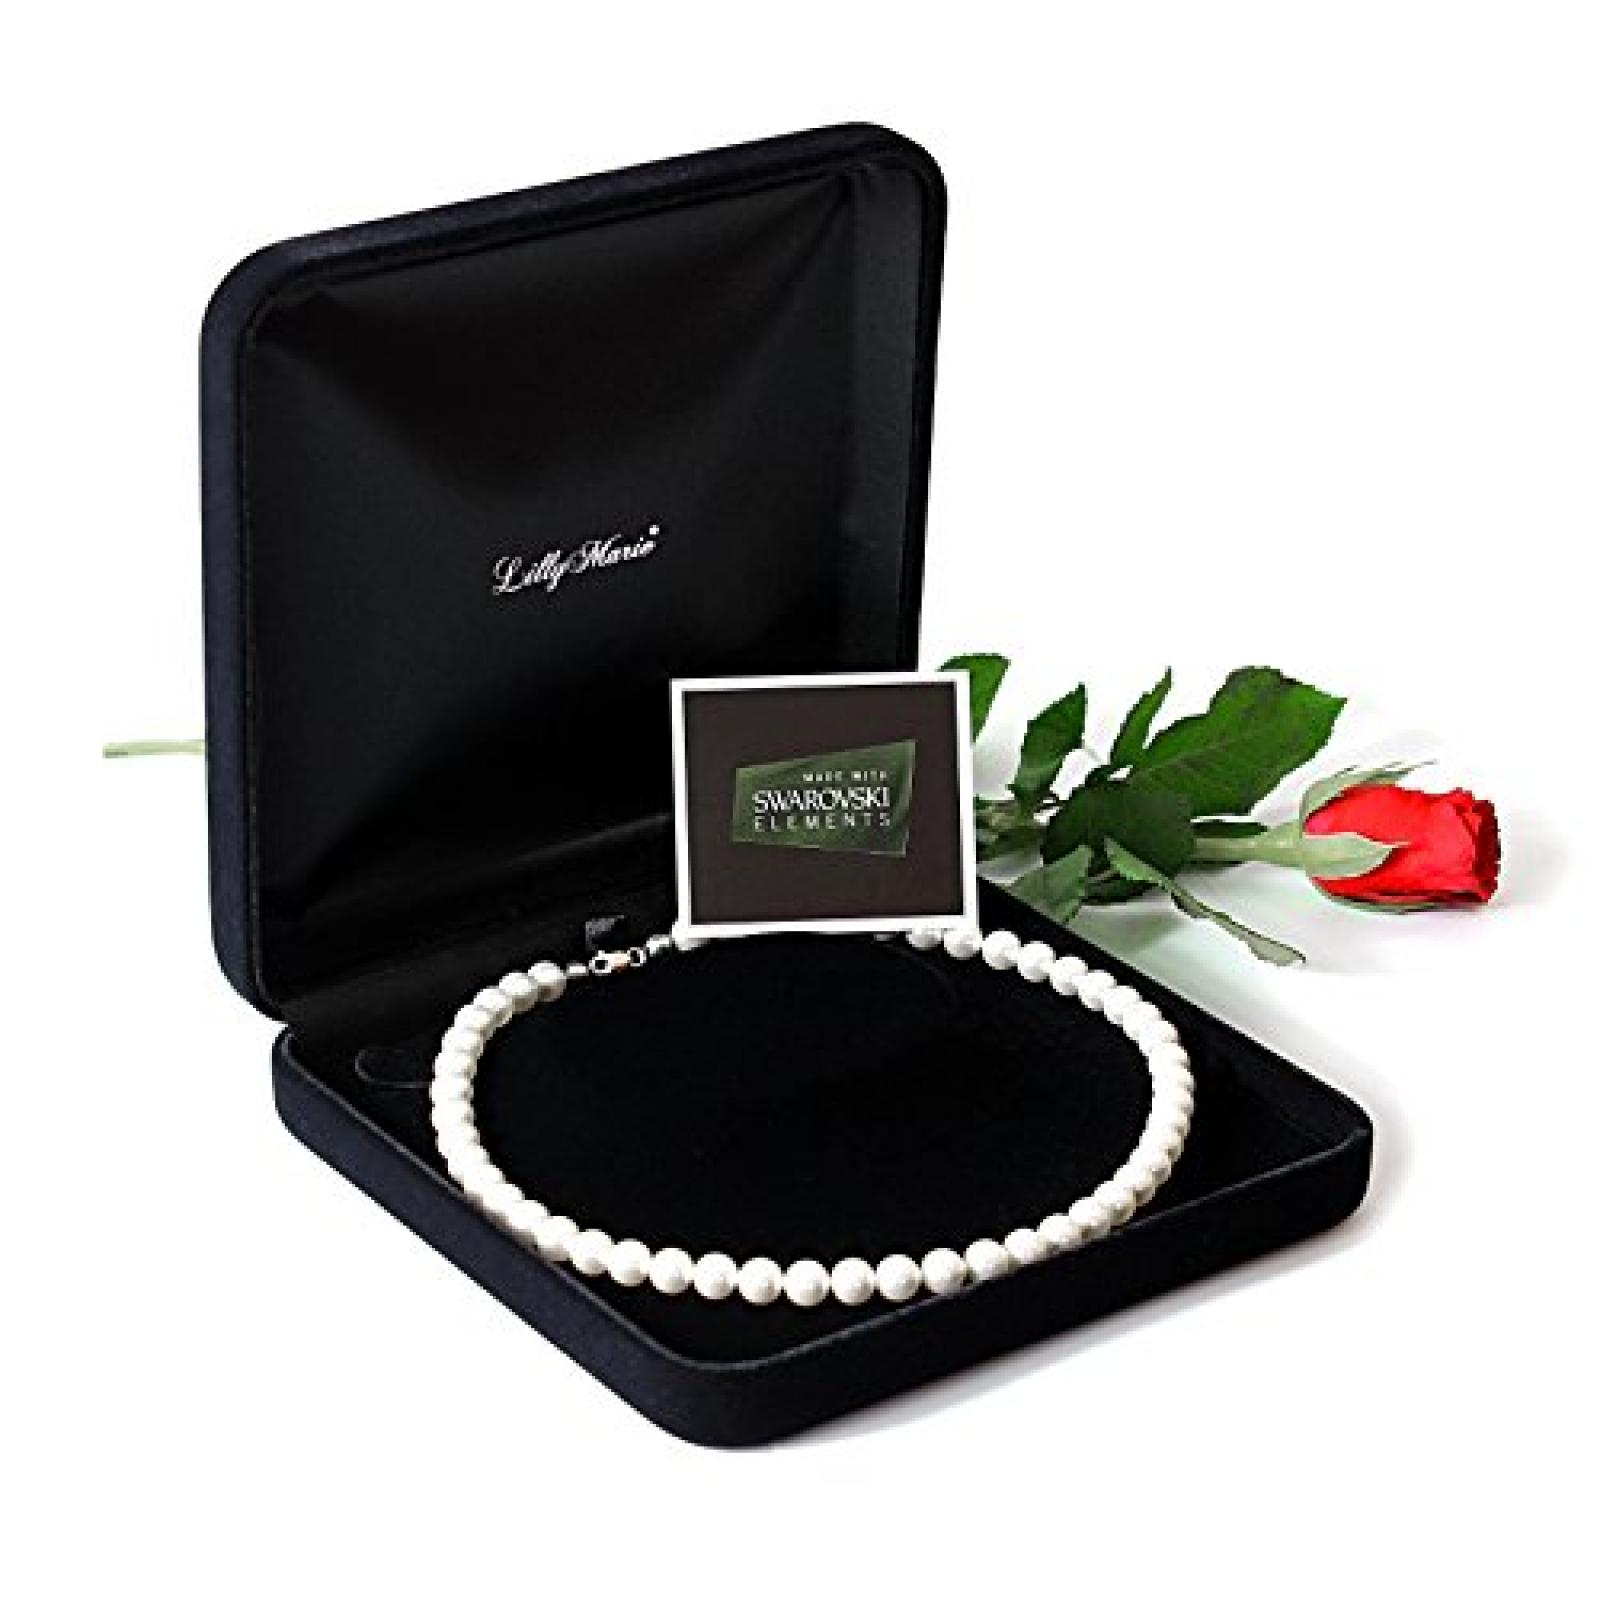 Eine Perlenkette aus echten Swarovski Elements Perlen, mit großem Schmucketui, ideal als Geschenk für Frau oder Freundin 